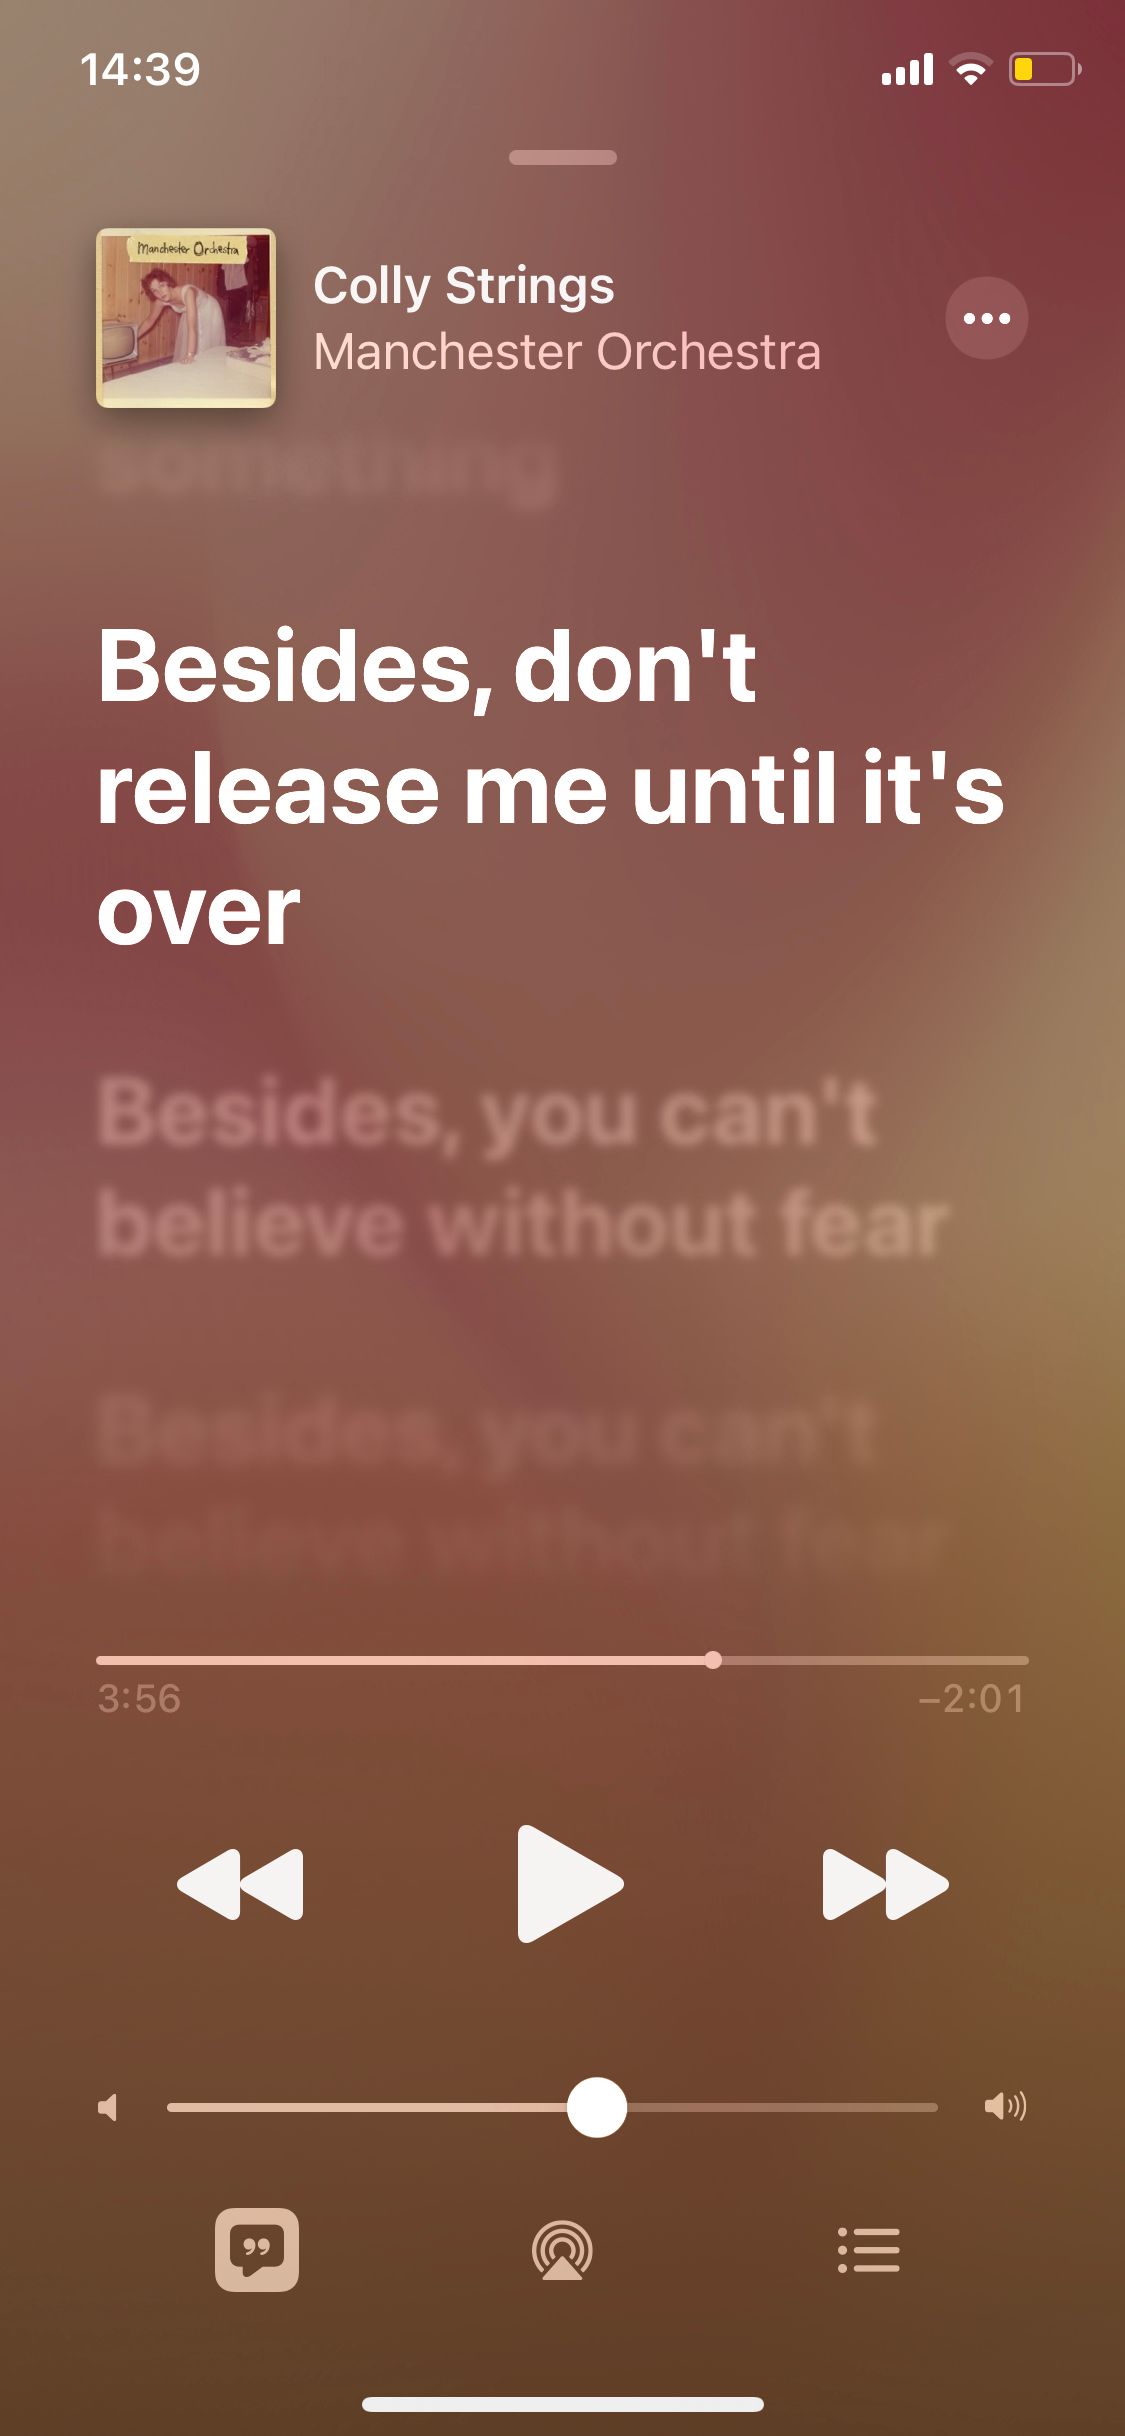 Live Lyrics on Apple Music